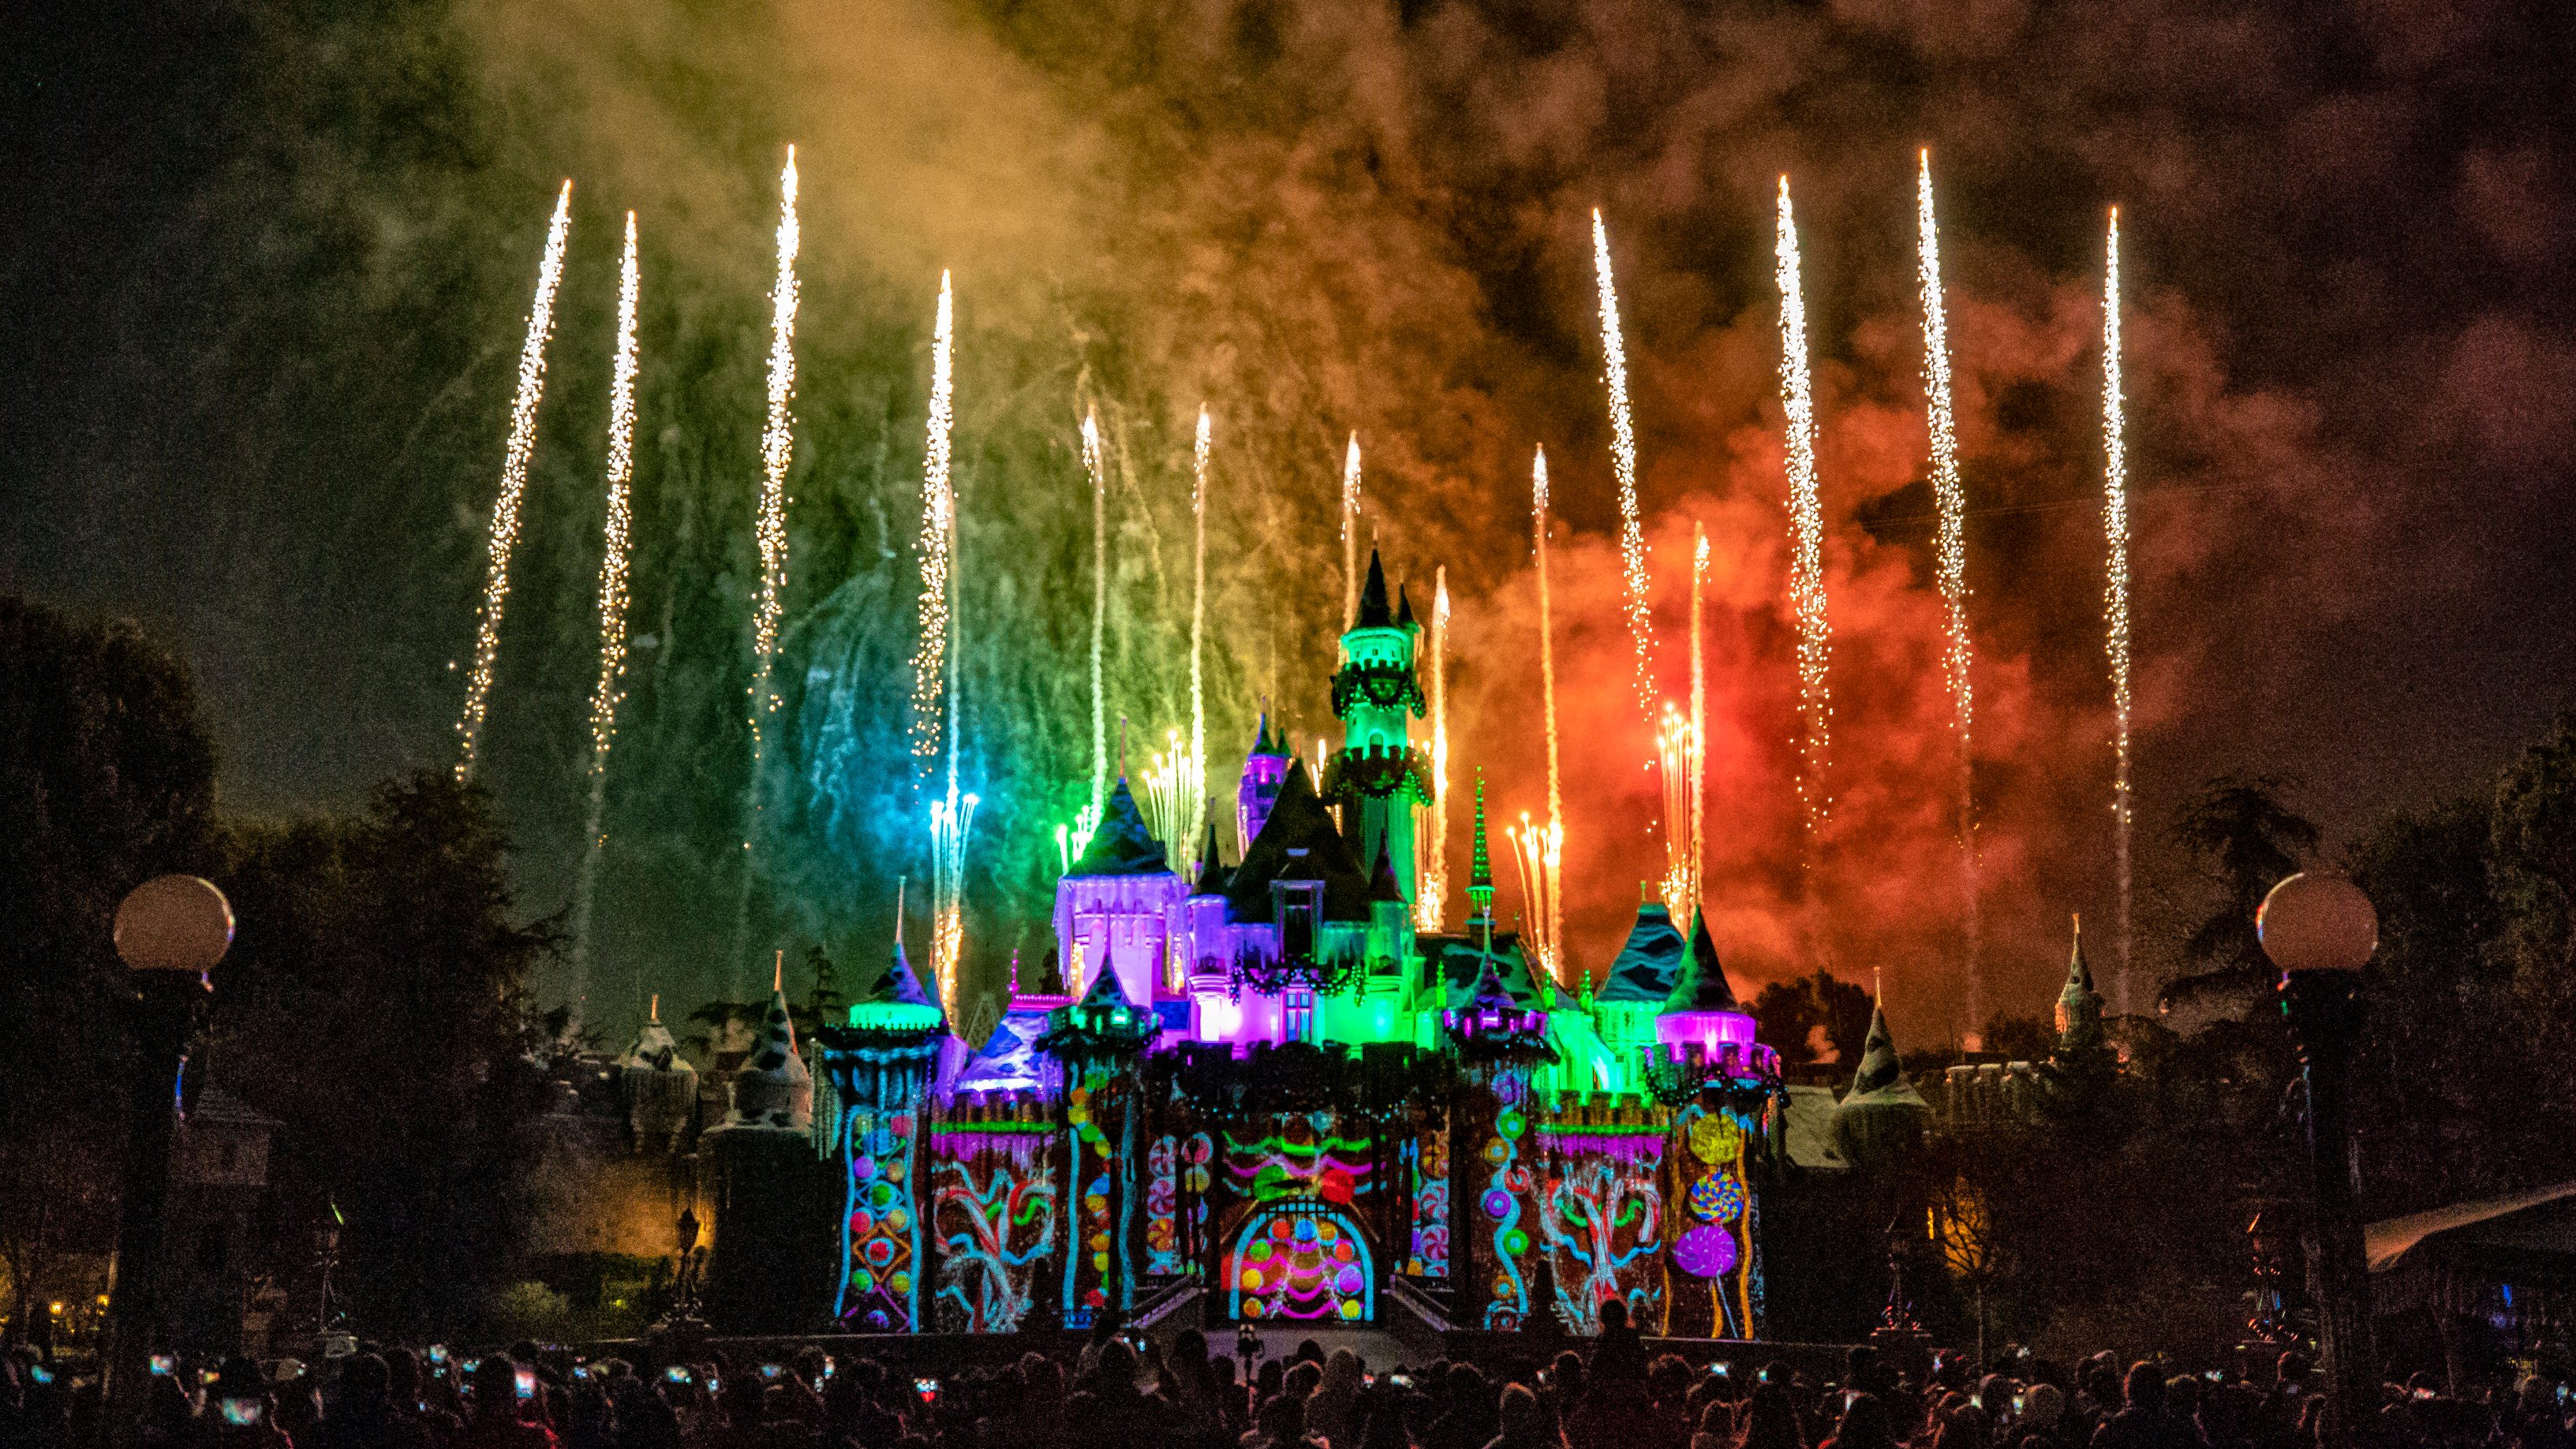 Promoção: Disneyland Resort oferece até 15% de desconto durante temporada de fim de ano